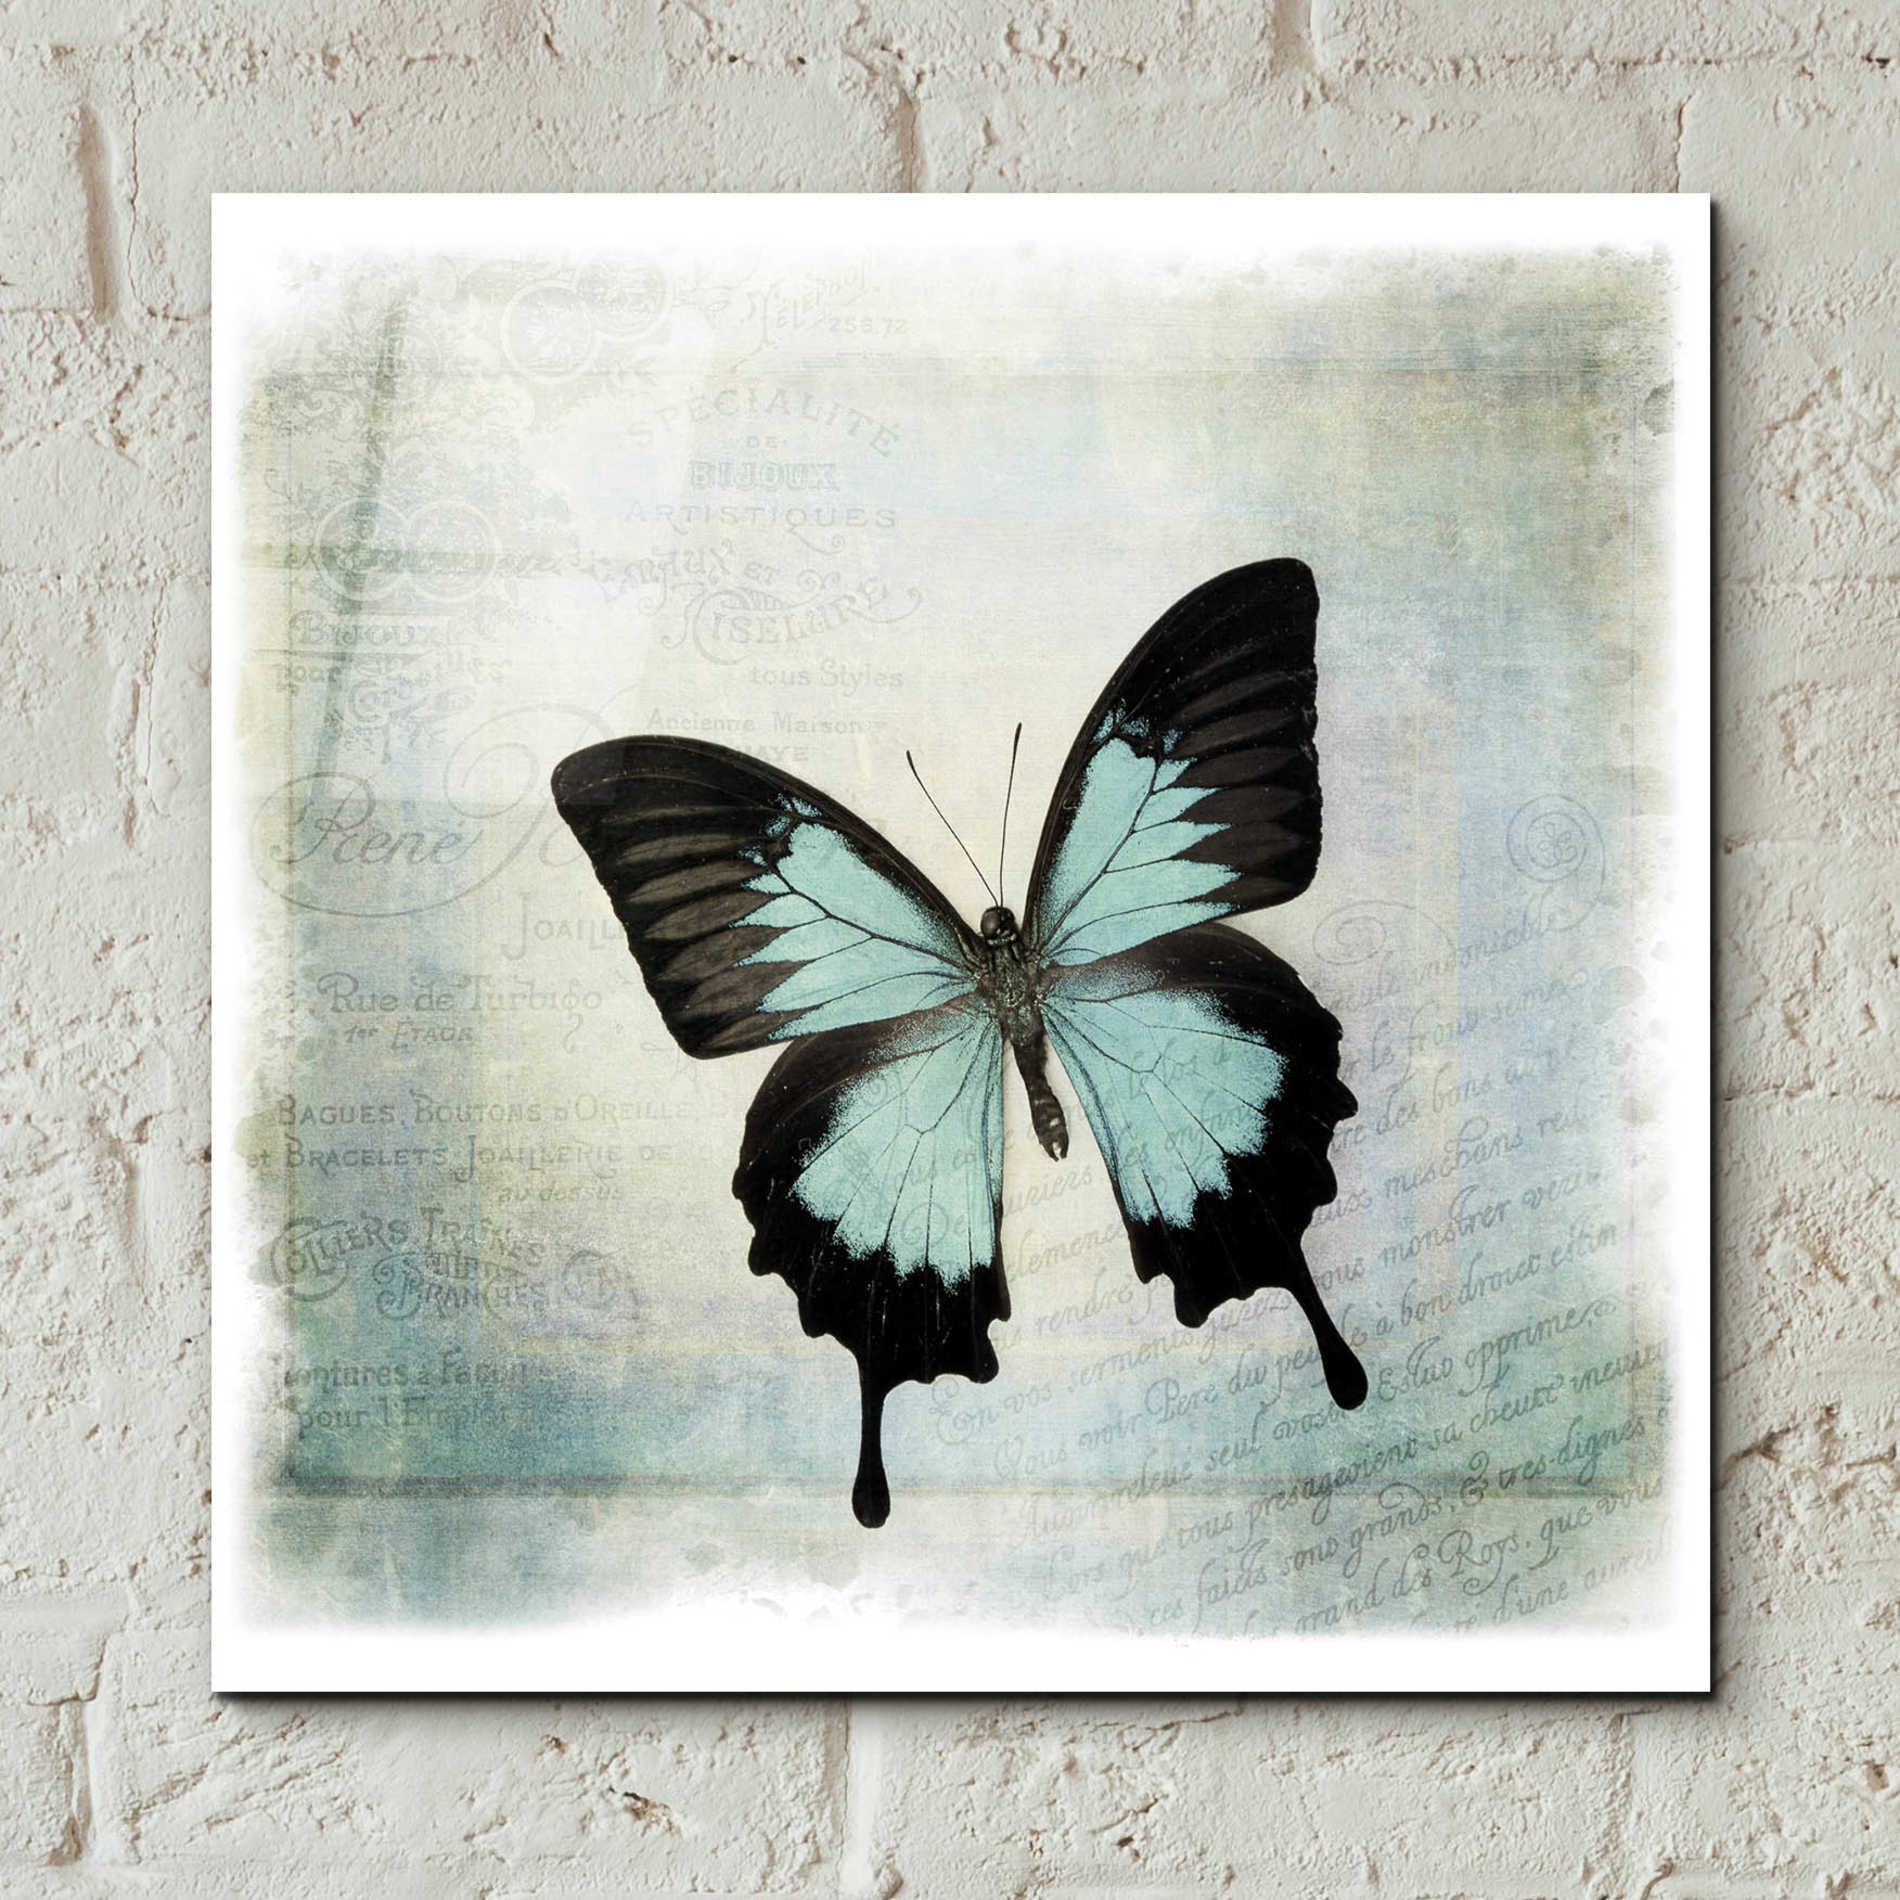 Epic Art 'Floating Butterfly III' by Debra Van Swearingen, Acrylic Glass Wall Art,12x12